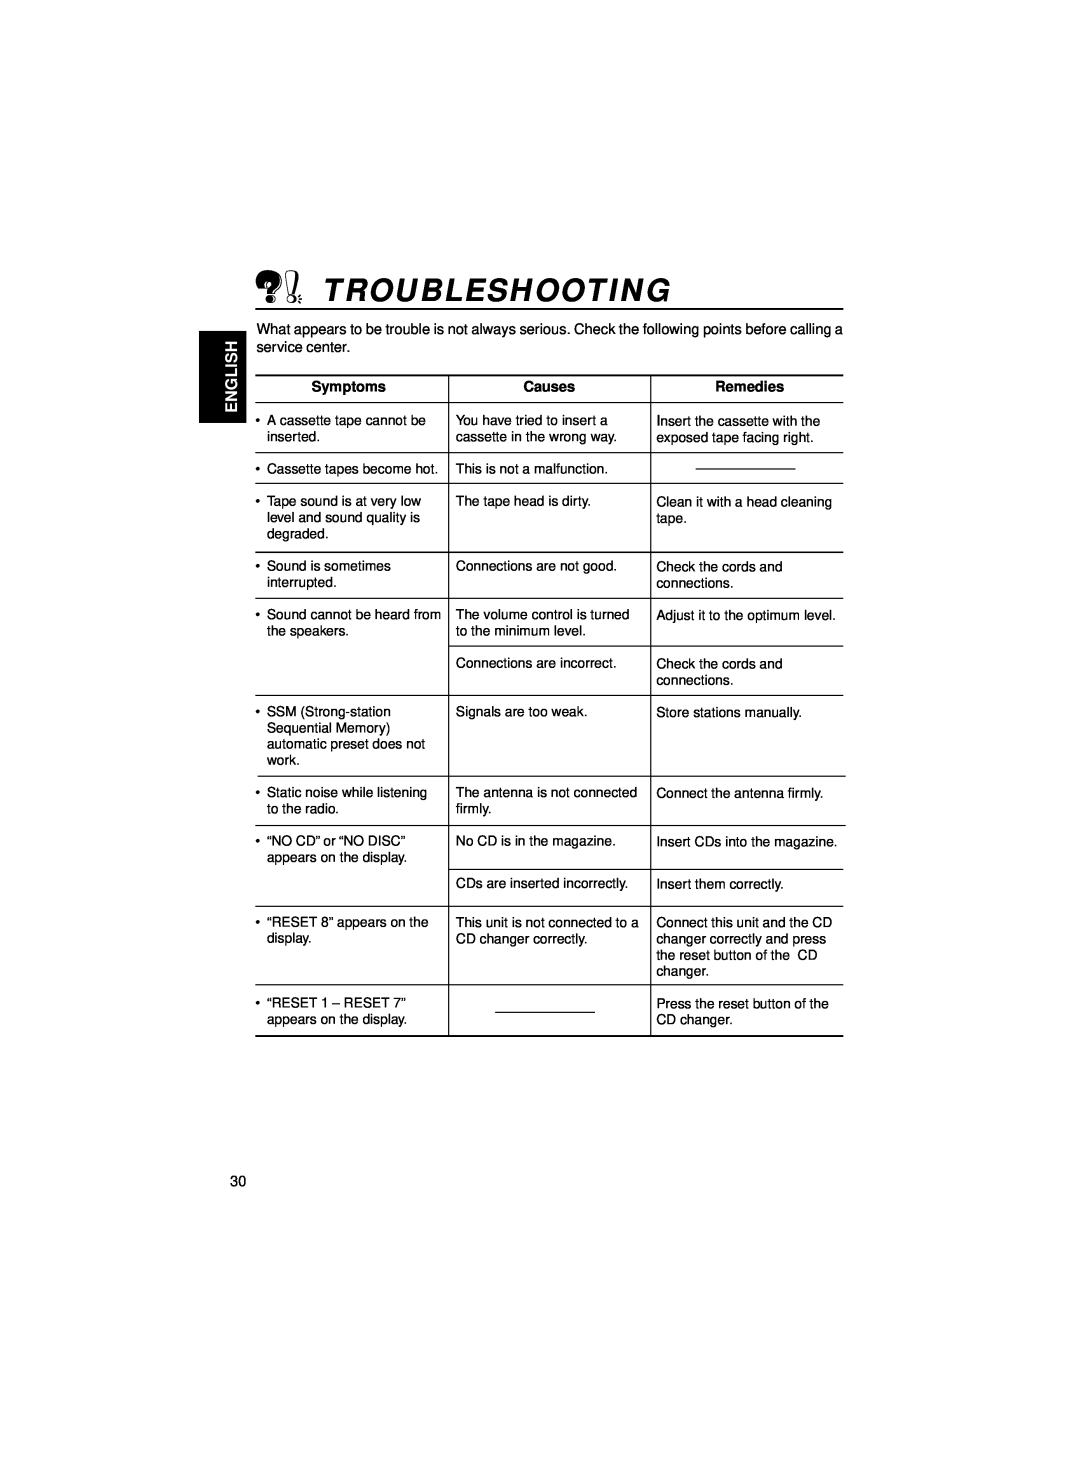 JVC KS-FX460R, KS-FX463R manual Troubleshooting, English, Symptoms, Causes, Remedies 